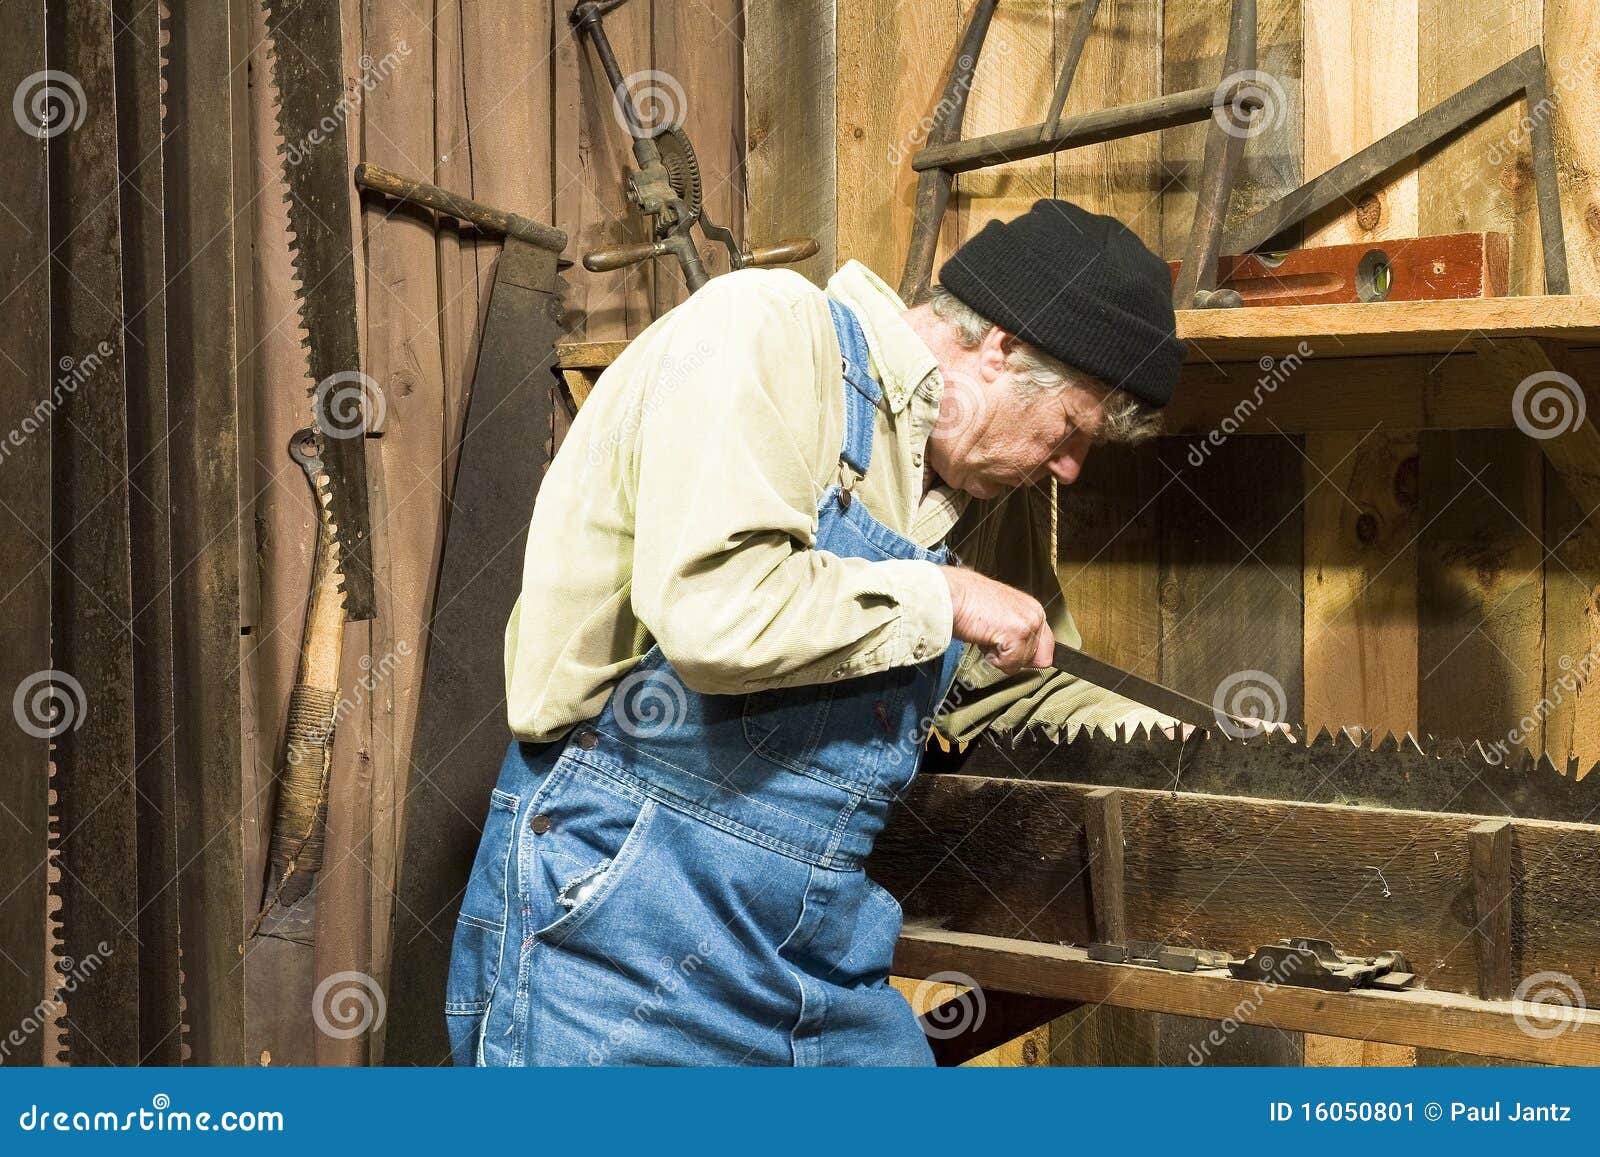 Man Sharpening An Old Saw Stock Image - Image: 16050801